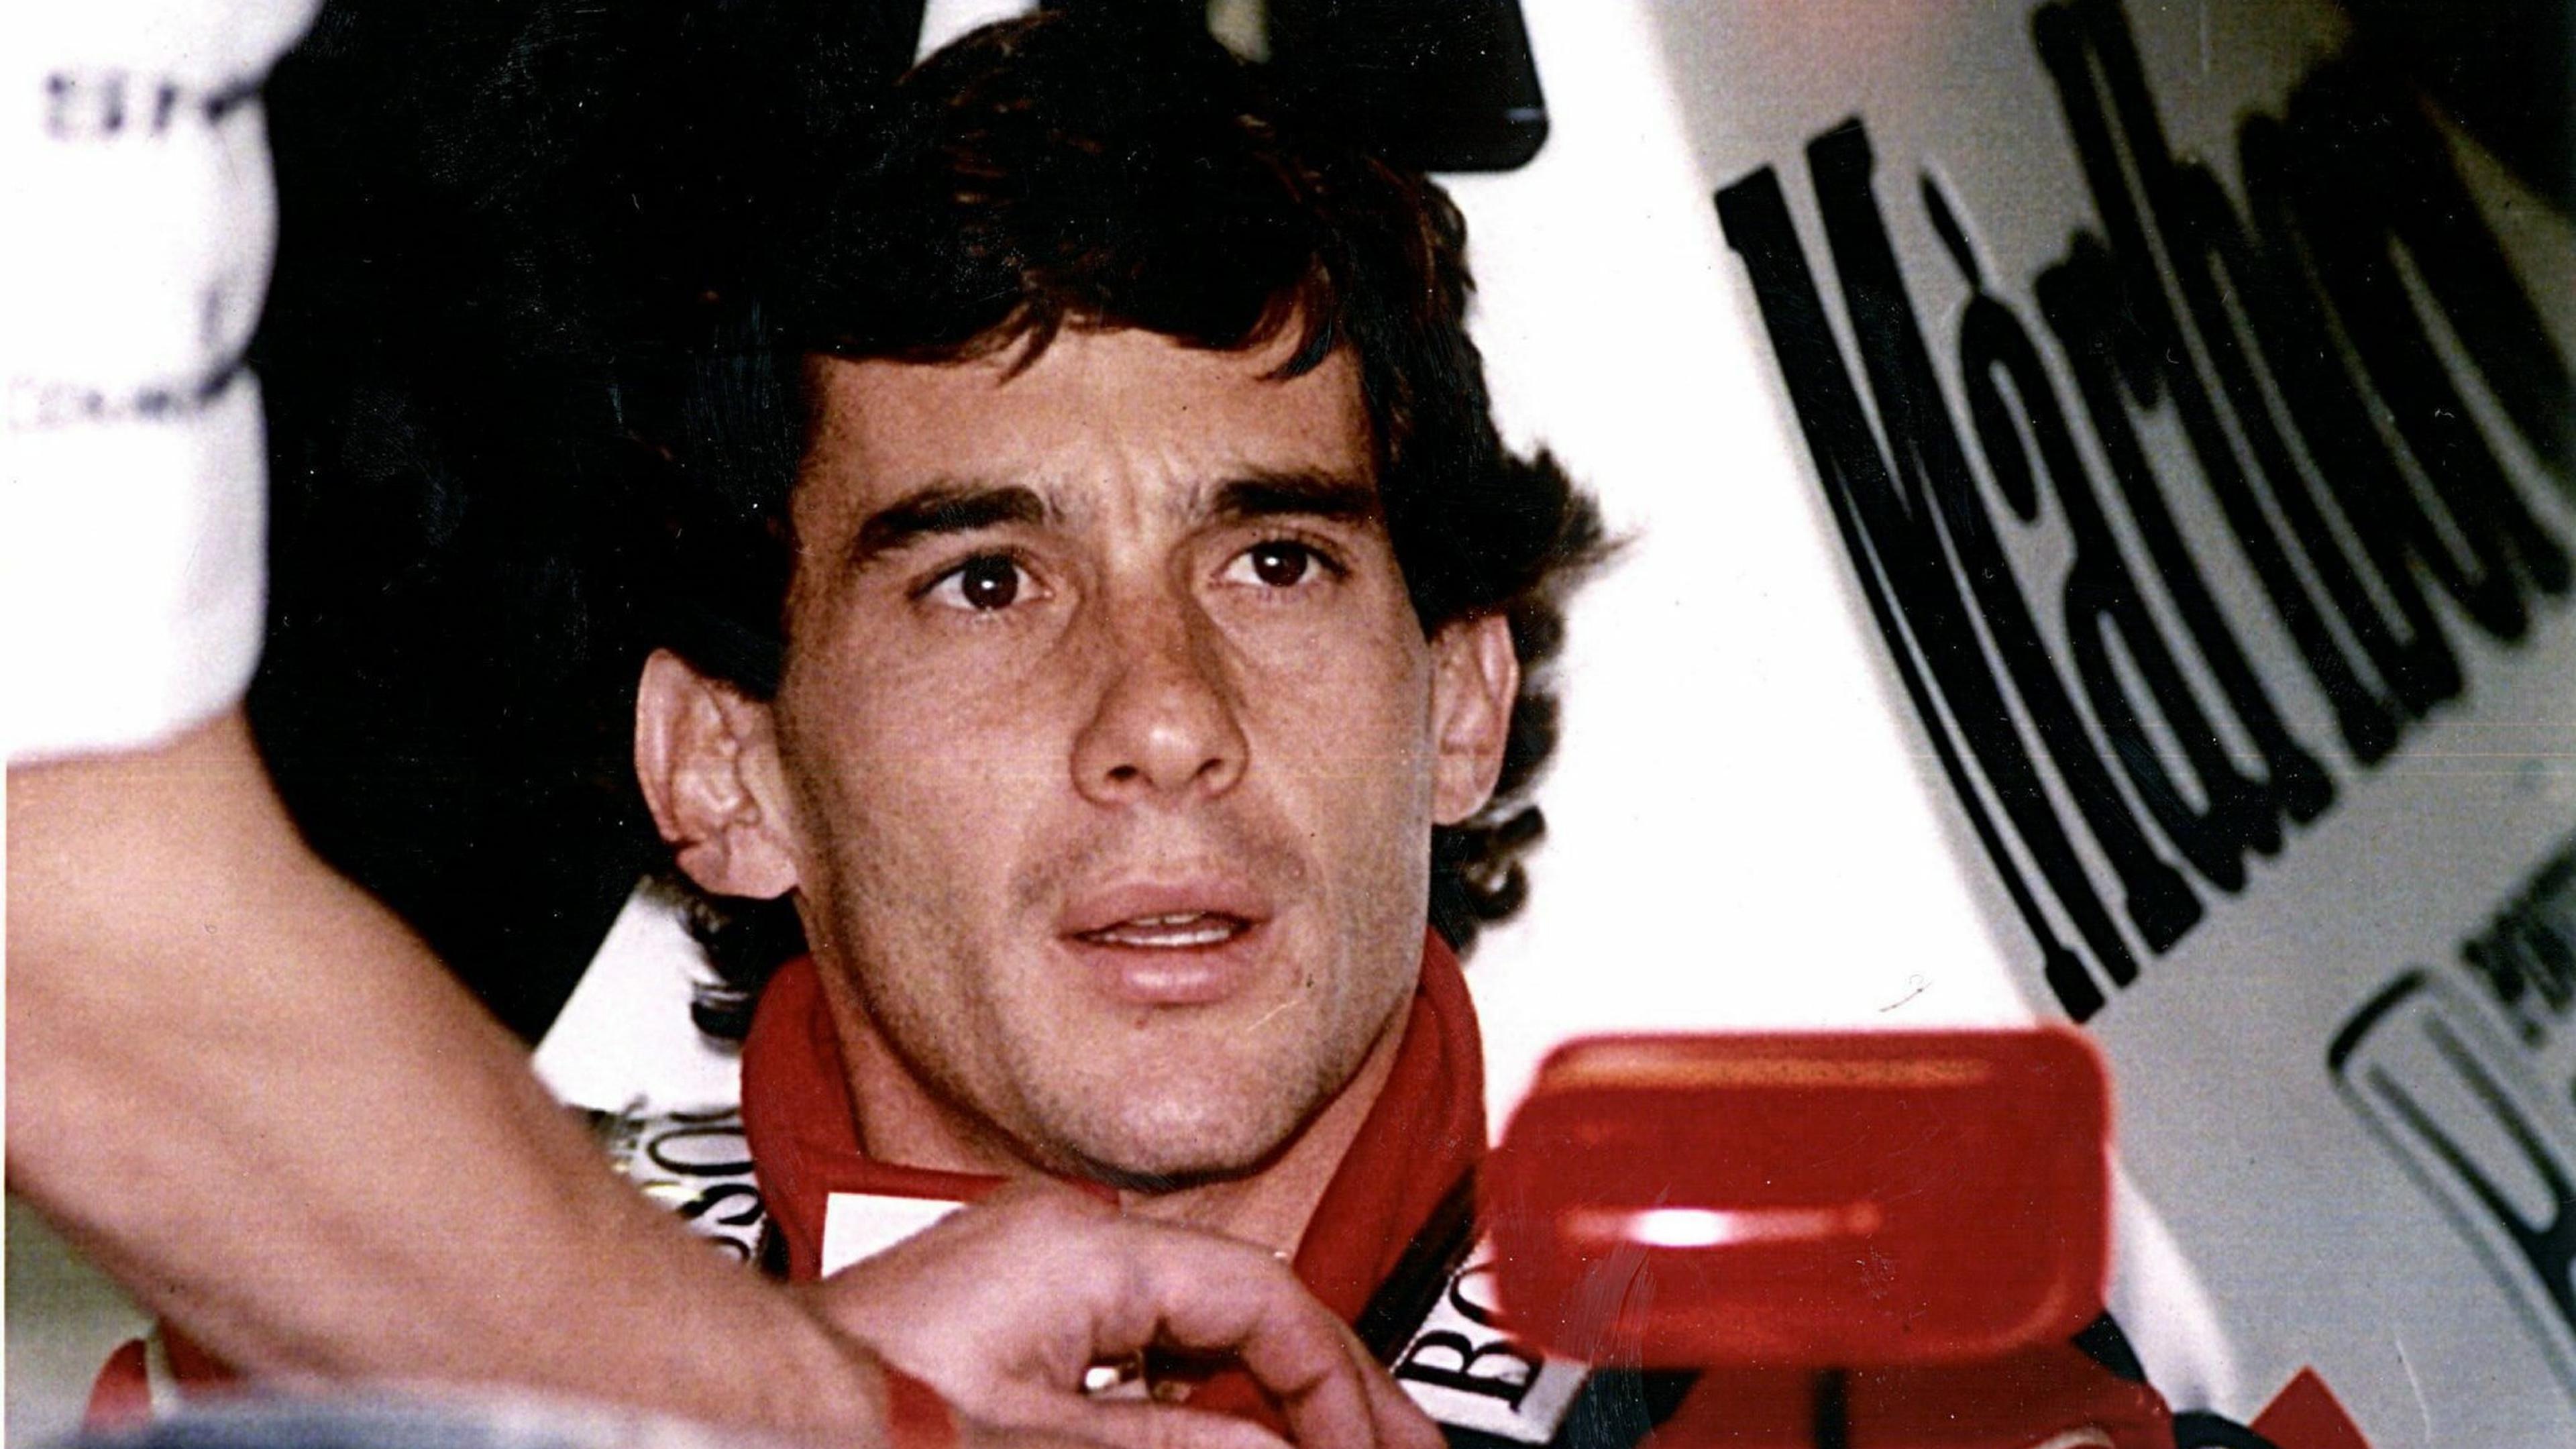 ARCHIV - 01.05.2004, Italien, Imola: Das undatierte Archivbild zeigt den brasilianischen Formel 1-Pilot Ayrton Senna. Im Mai 1994 beim Großen Preis von San Marino in Imola verunglückte Senna tödlich. (zu dpa «Tod eines Unverwundbaren: Die Formel-1-Tragödie von Imola» am 23.04.2019) Foto: EPA/dpa +++ dpa-Bildfunk +++